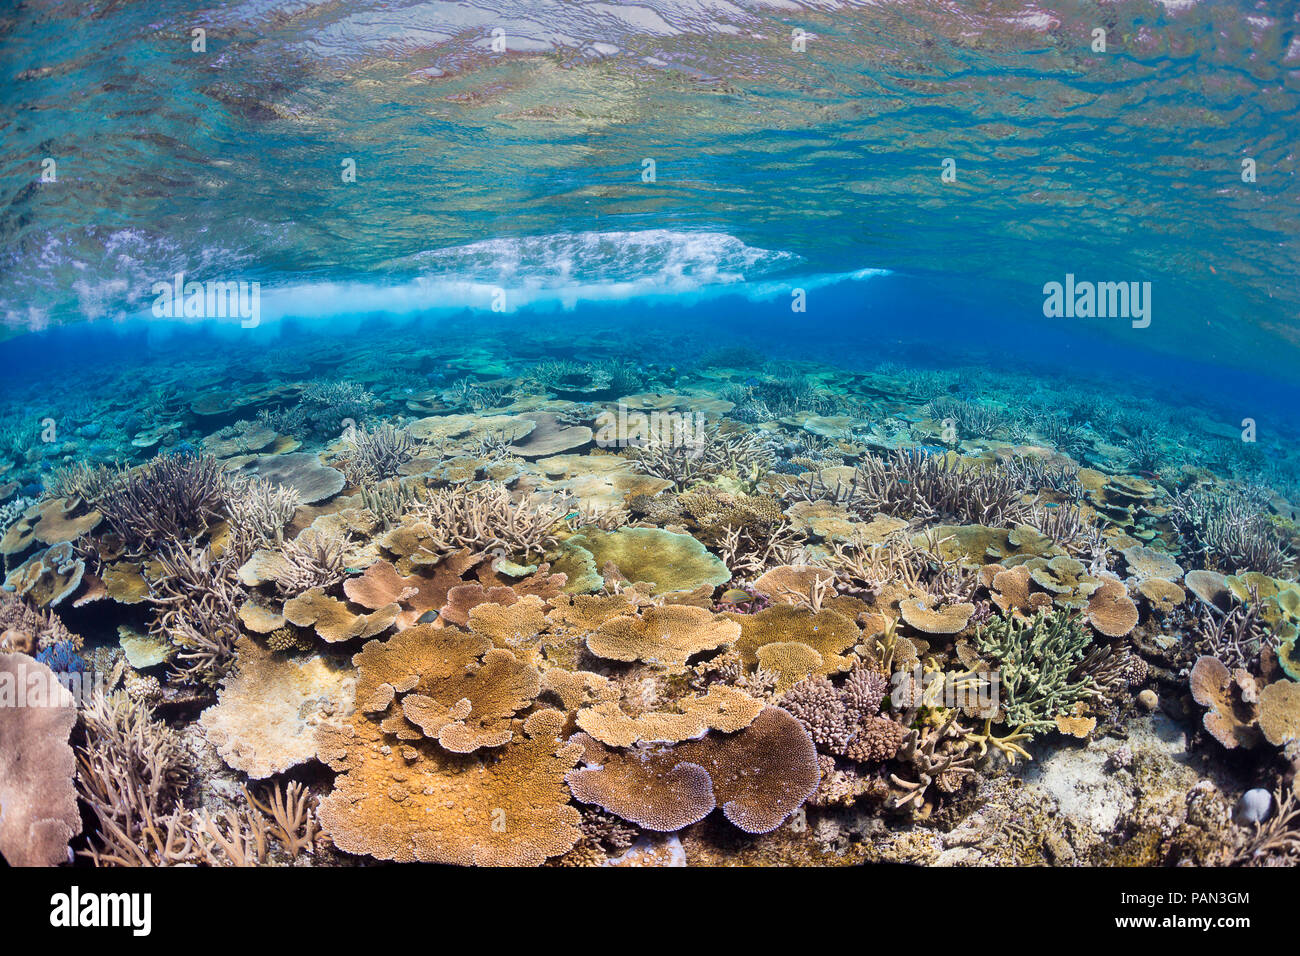 Un onda passa sopra la parte superiore di questo Fijian reef di corallo duro. Isole Figi. Foto Stock